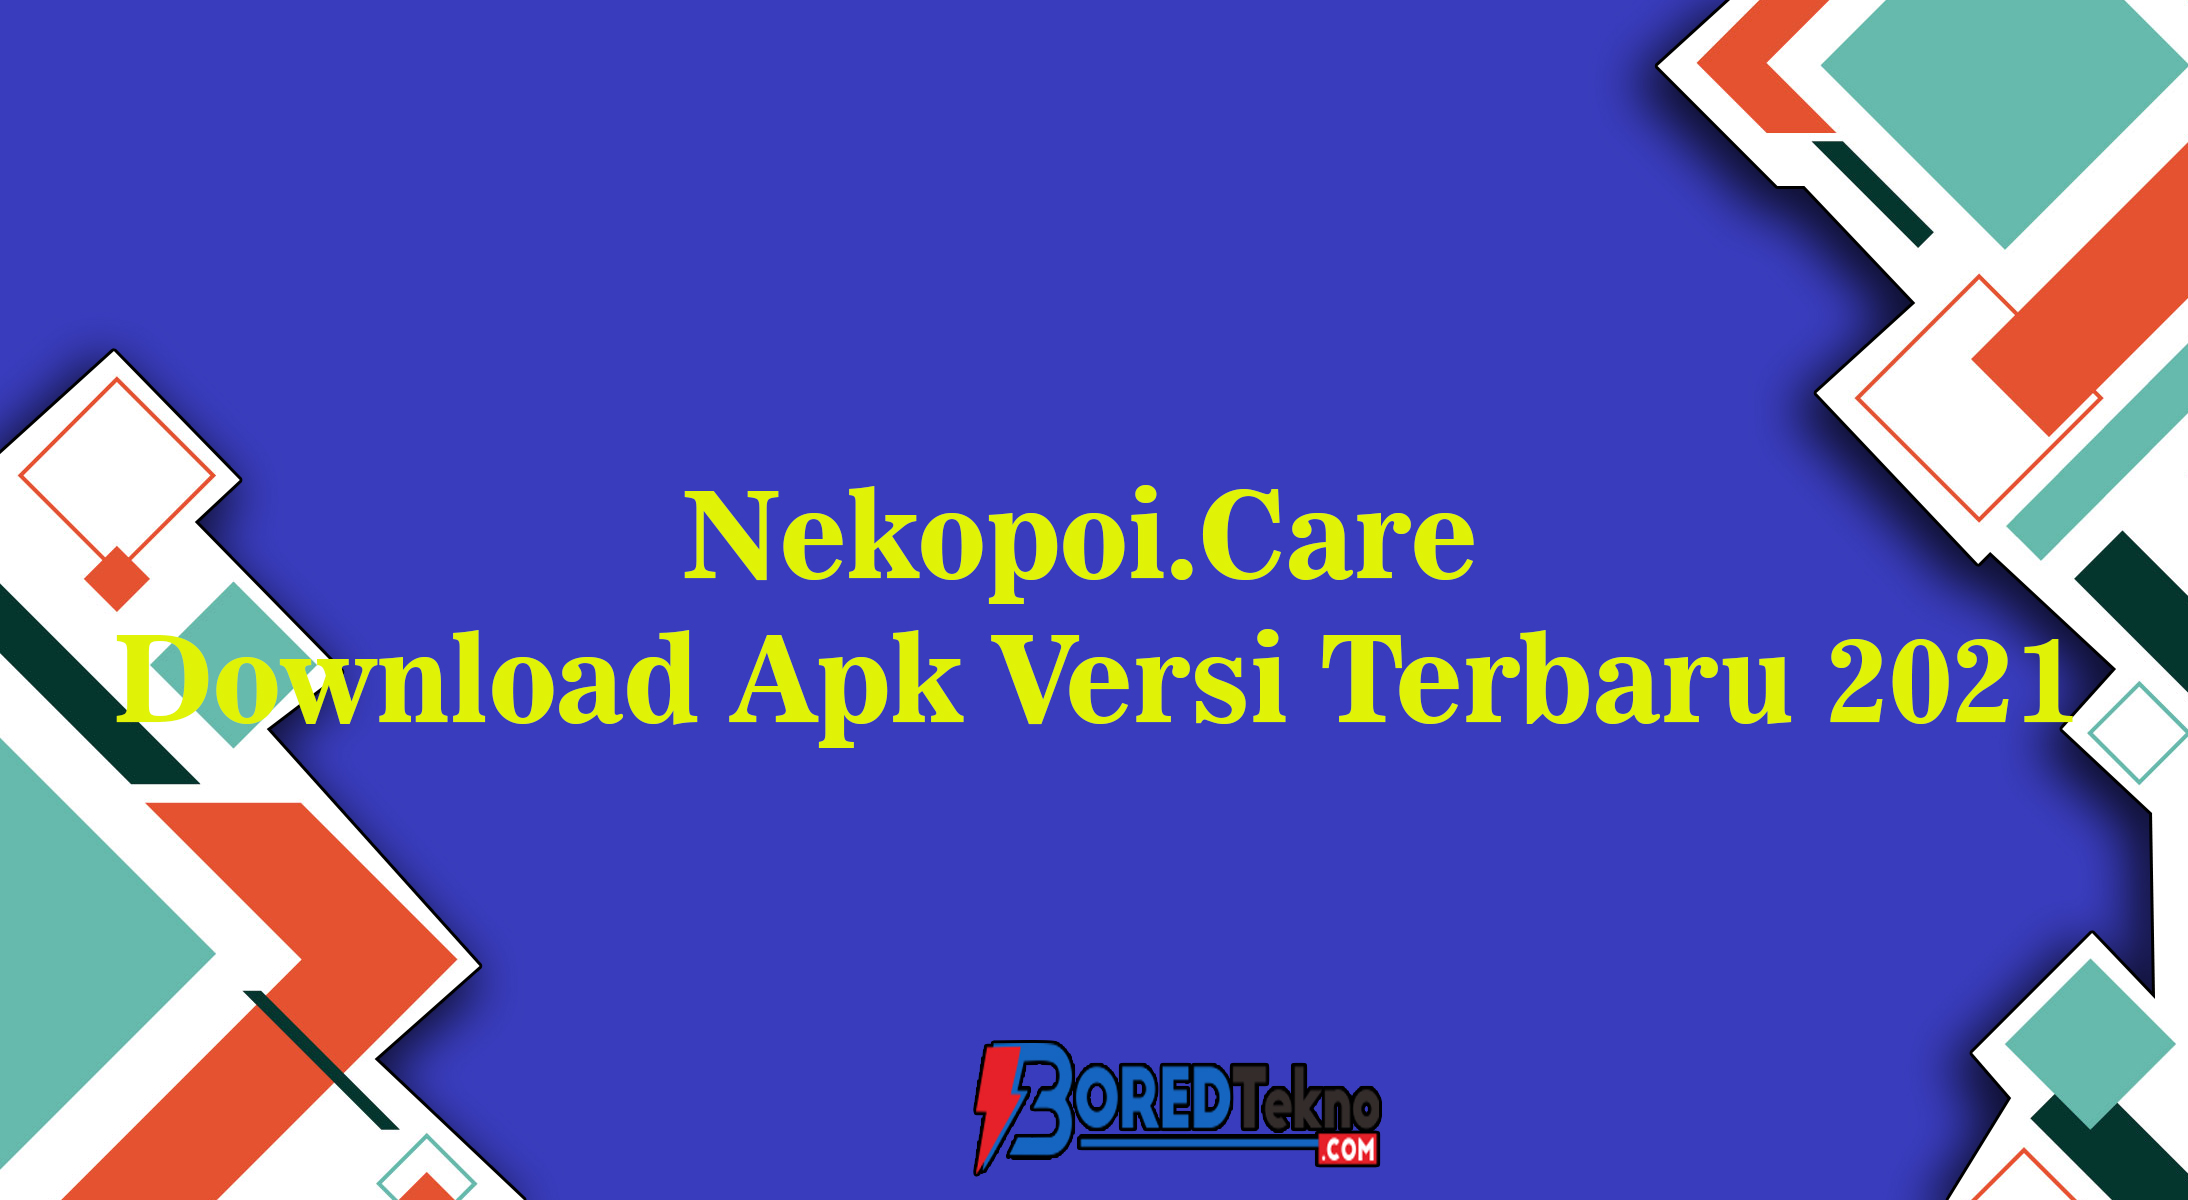 Nekopoi care websiteoutlook download apk